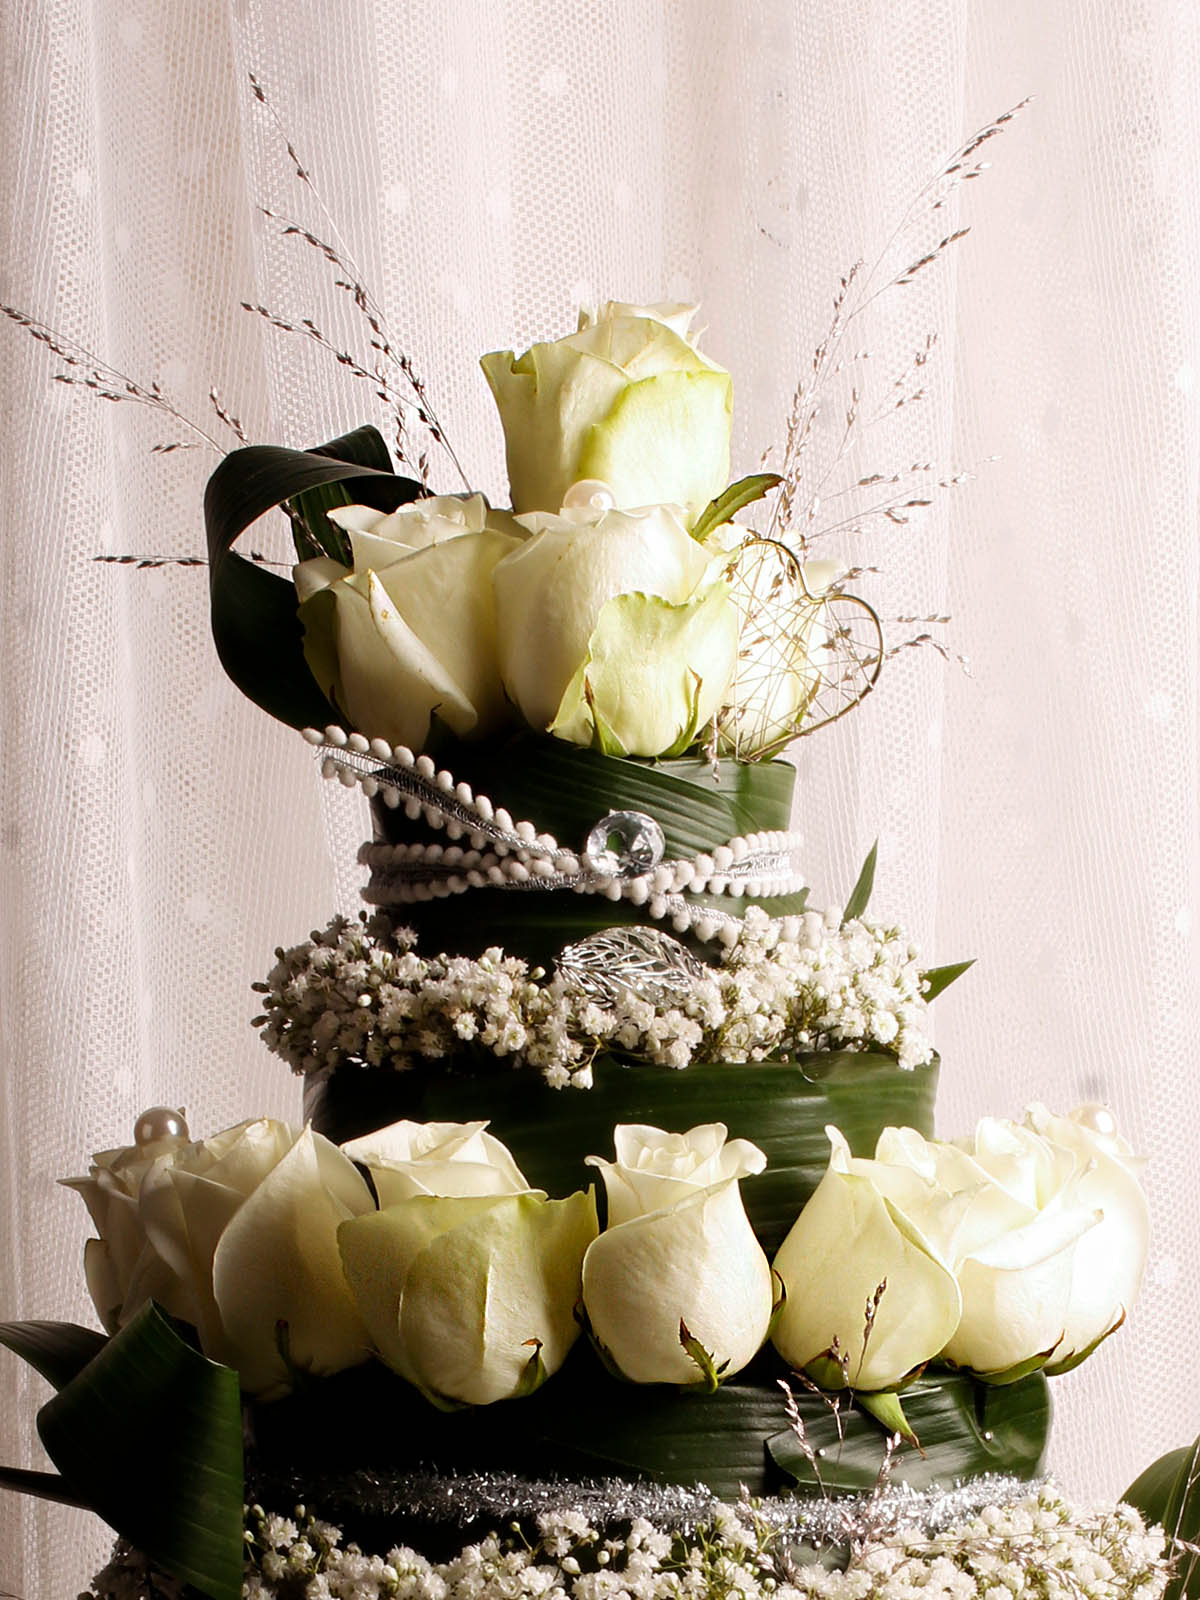 The Wedding Cake by Fleur van der Tuin 03